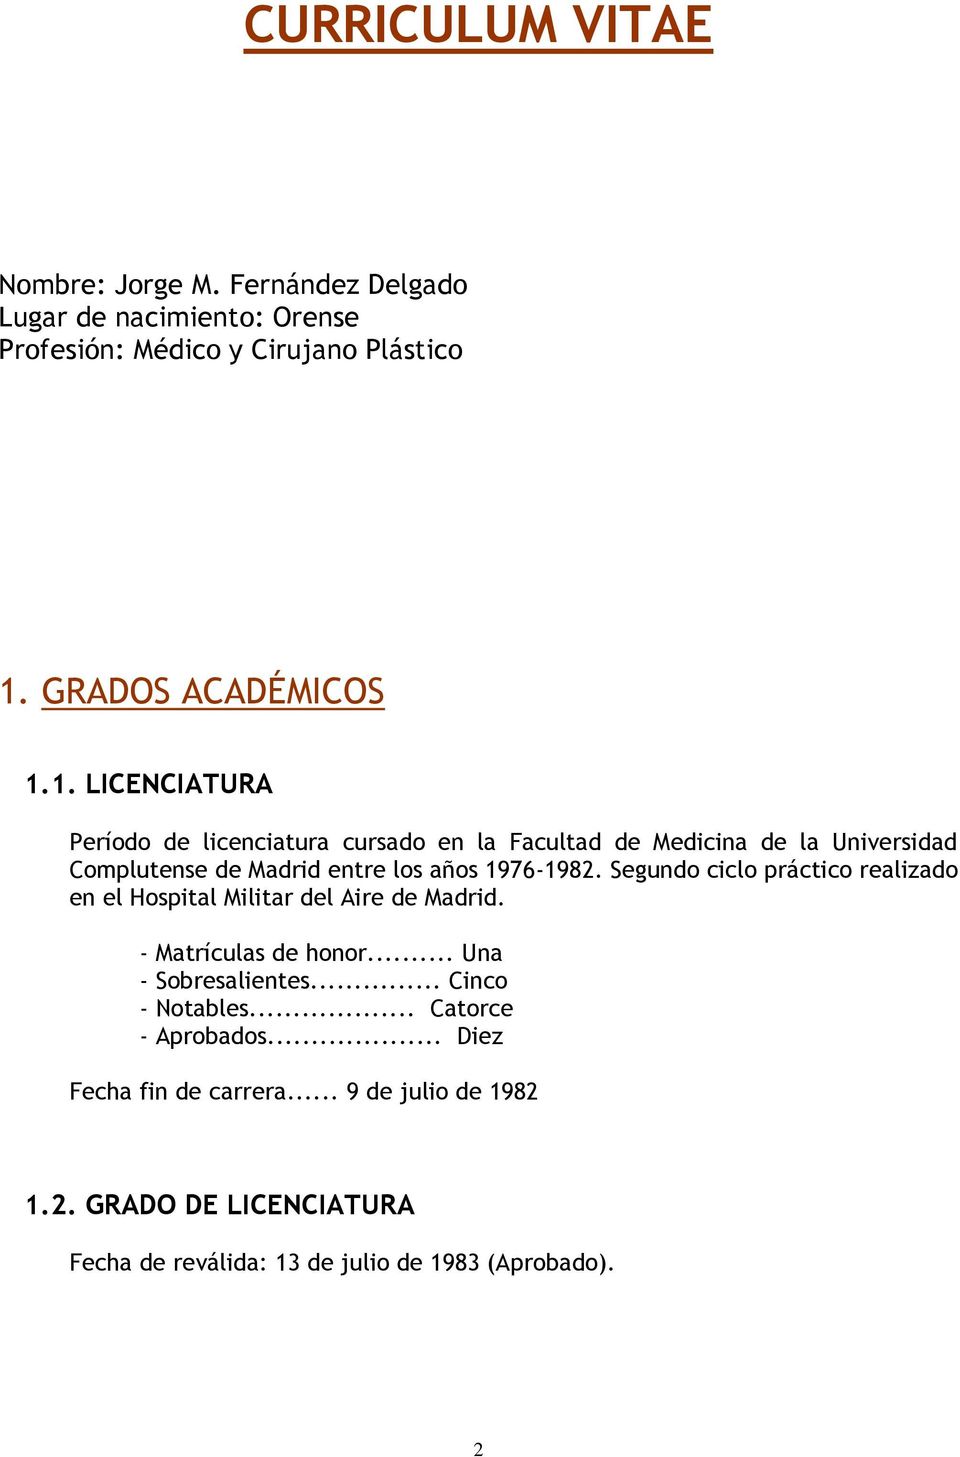 1. LICENCIATURA Período de licenciatura cursado en la Facultad de Medicina de la Universidad Complutense de Madrid entre los años 1976-1982.